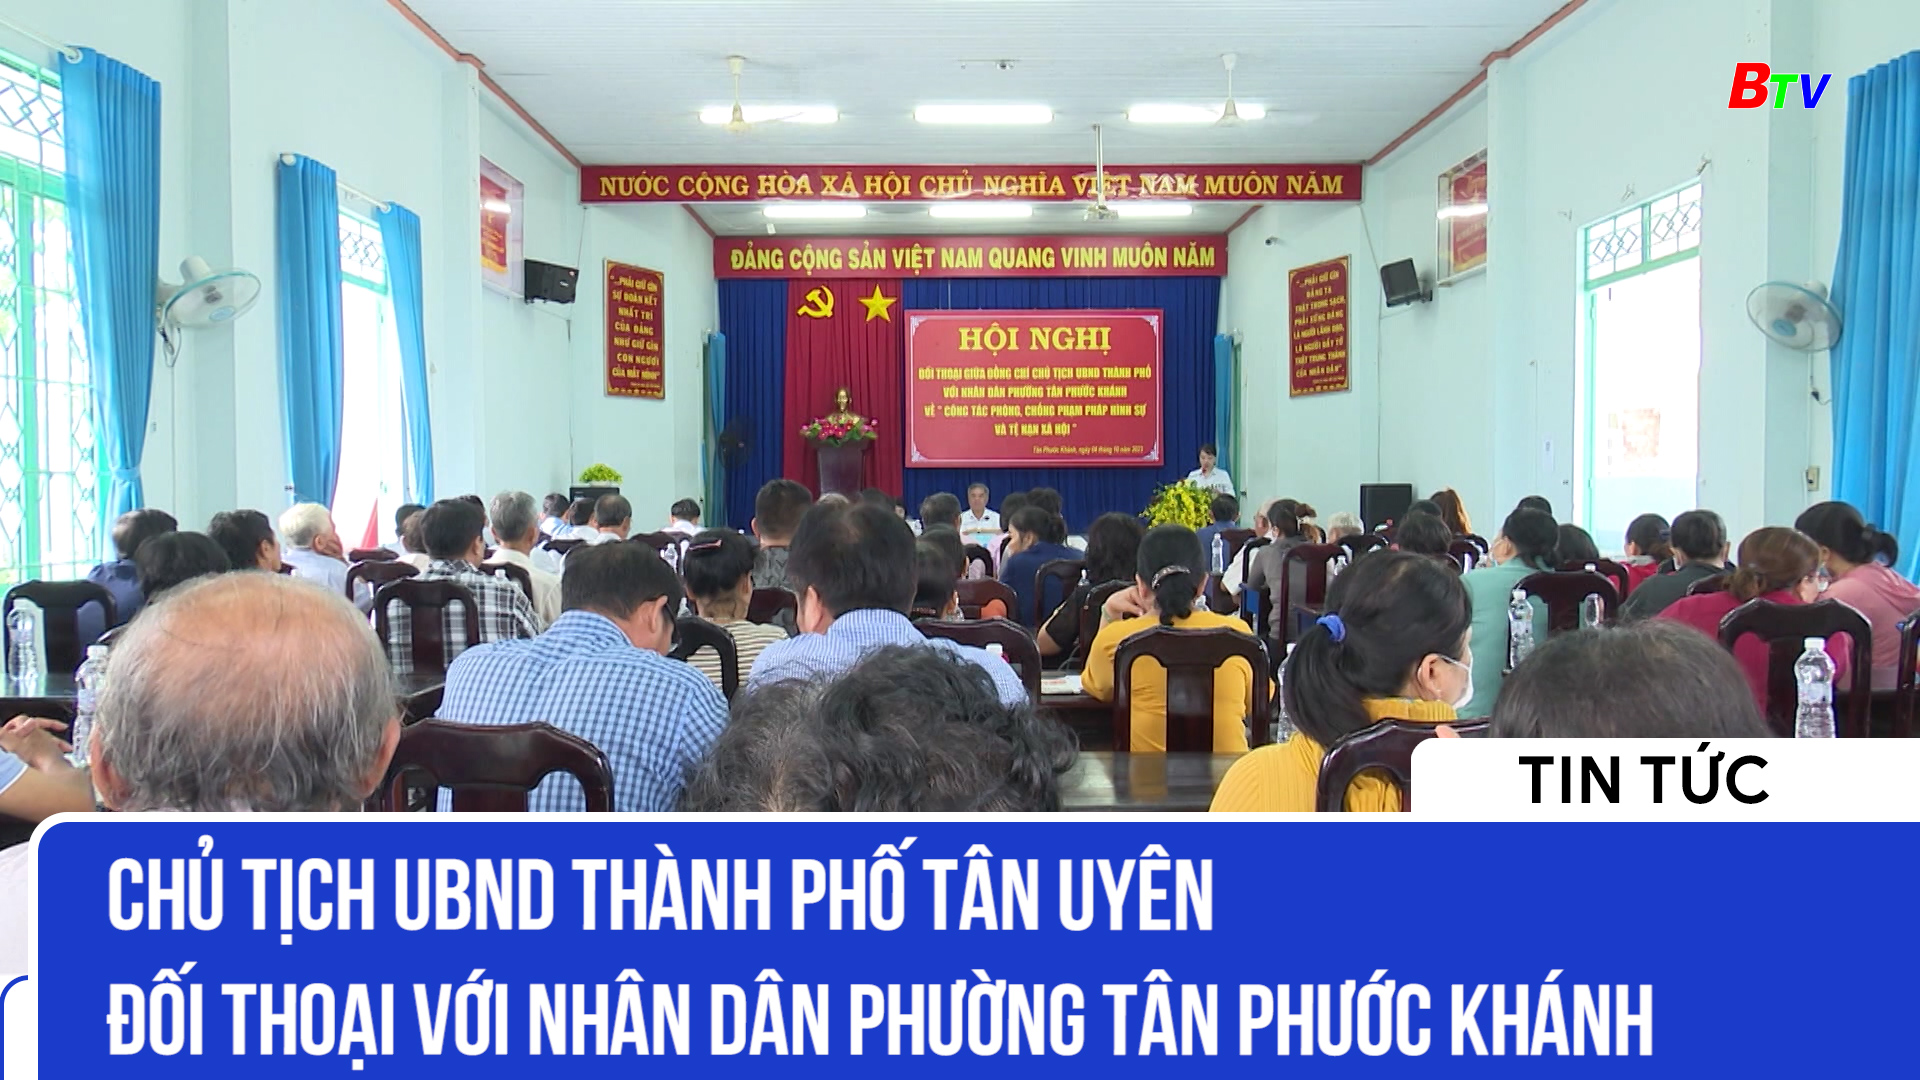 Chủ tịch UBND thành phố Tân Uyên đối thoại với nhân dân Phường Tân Phước Khánh